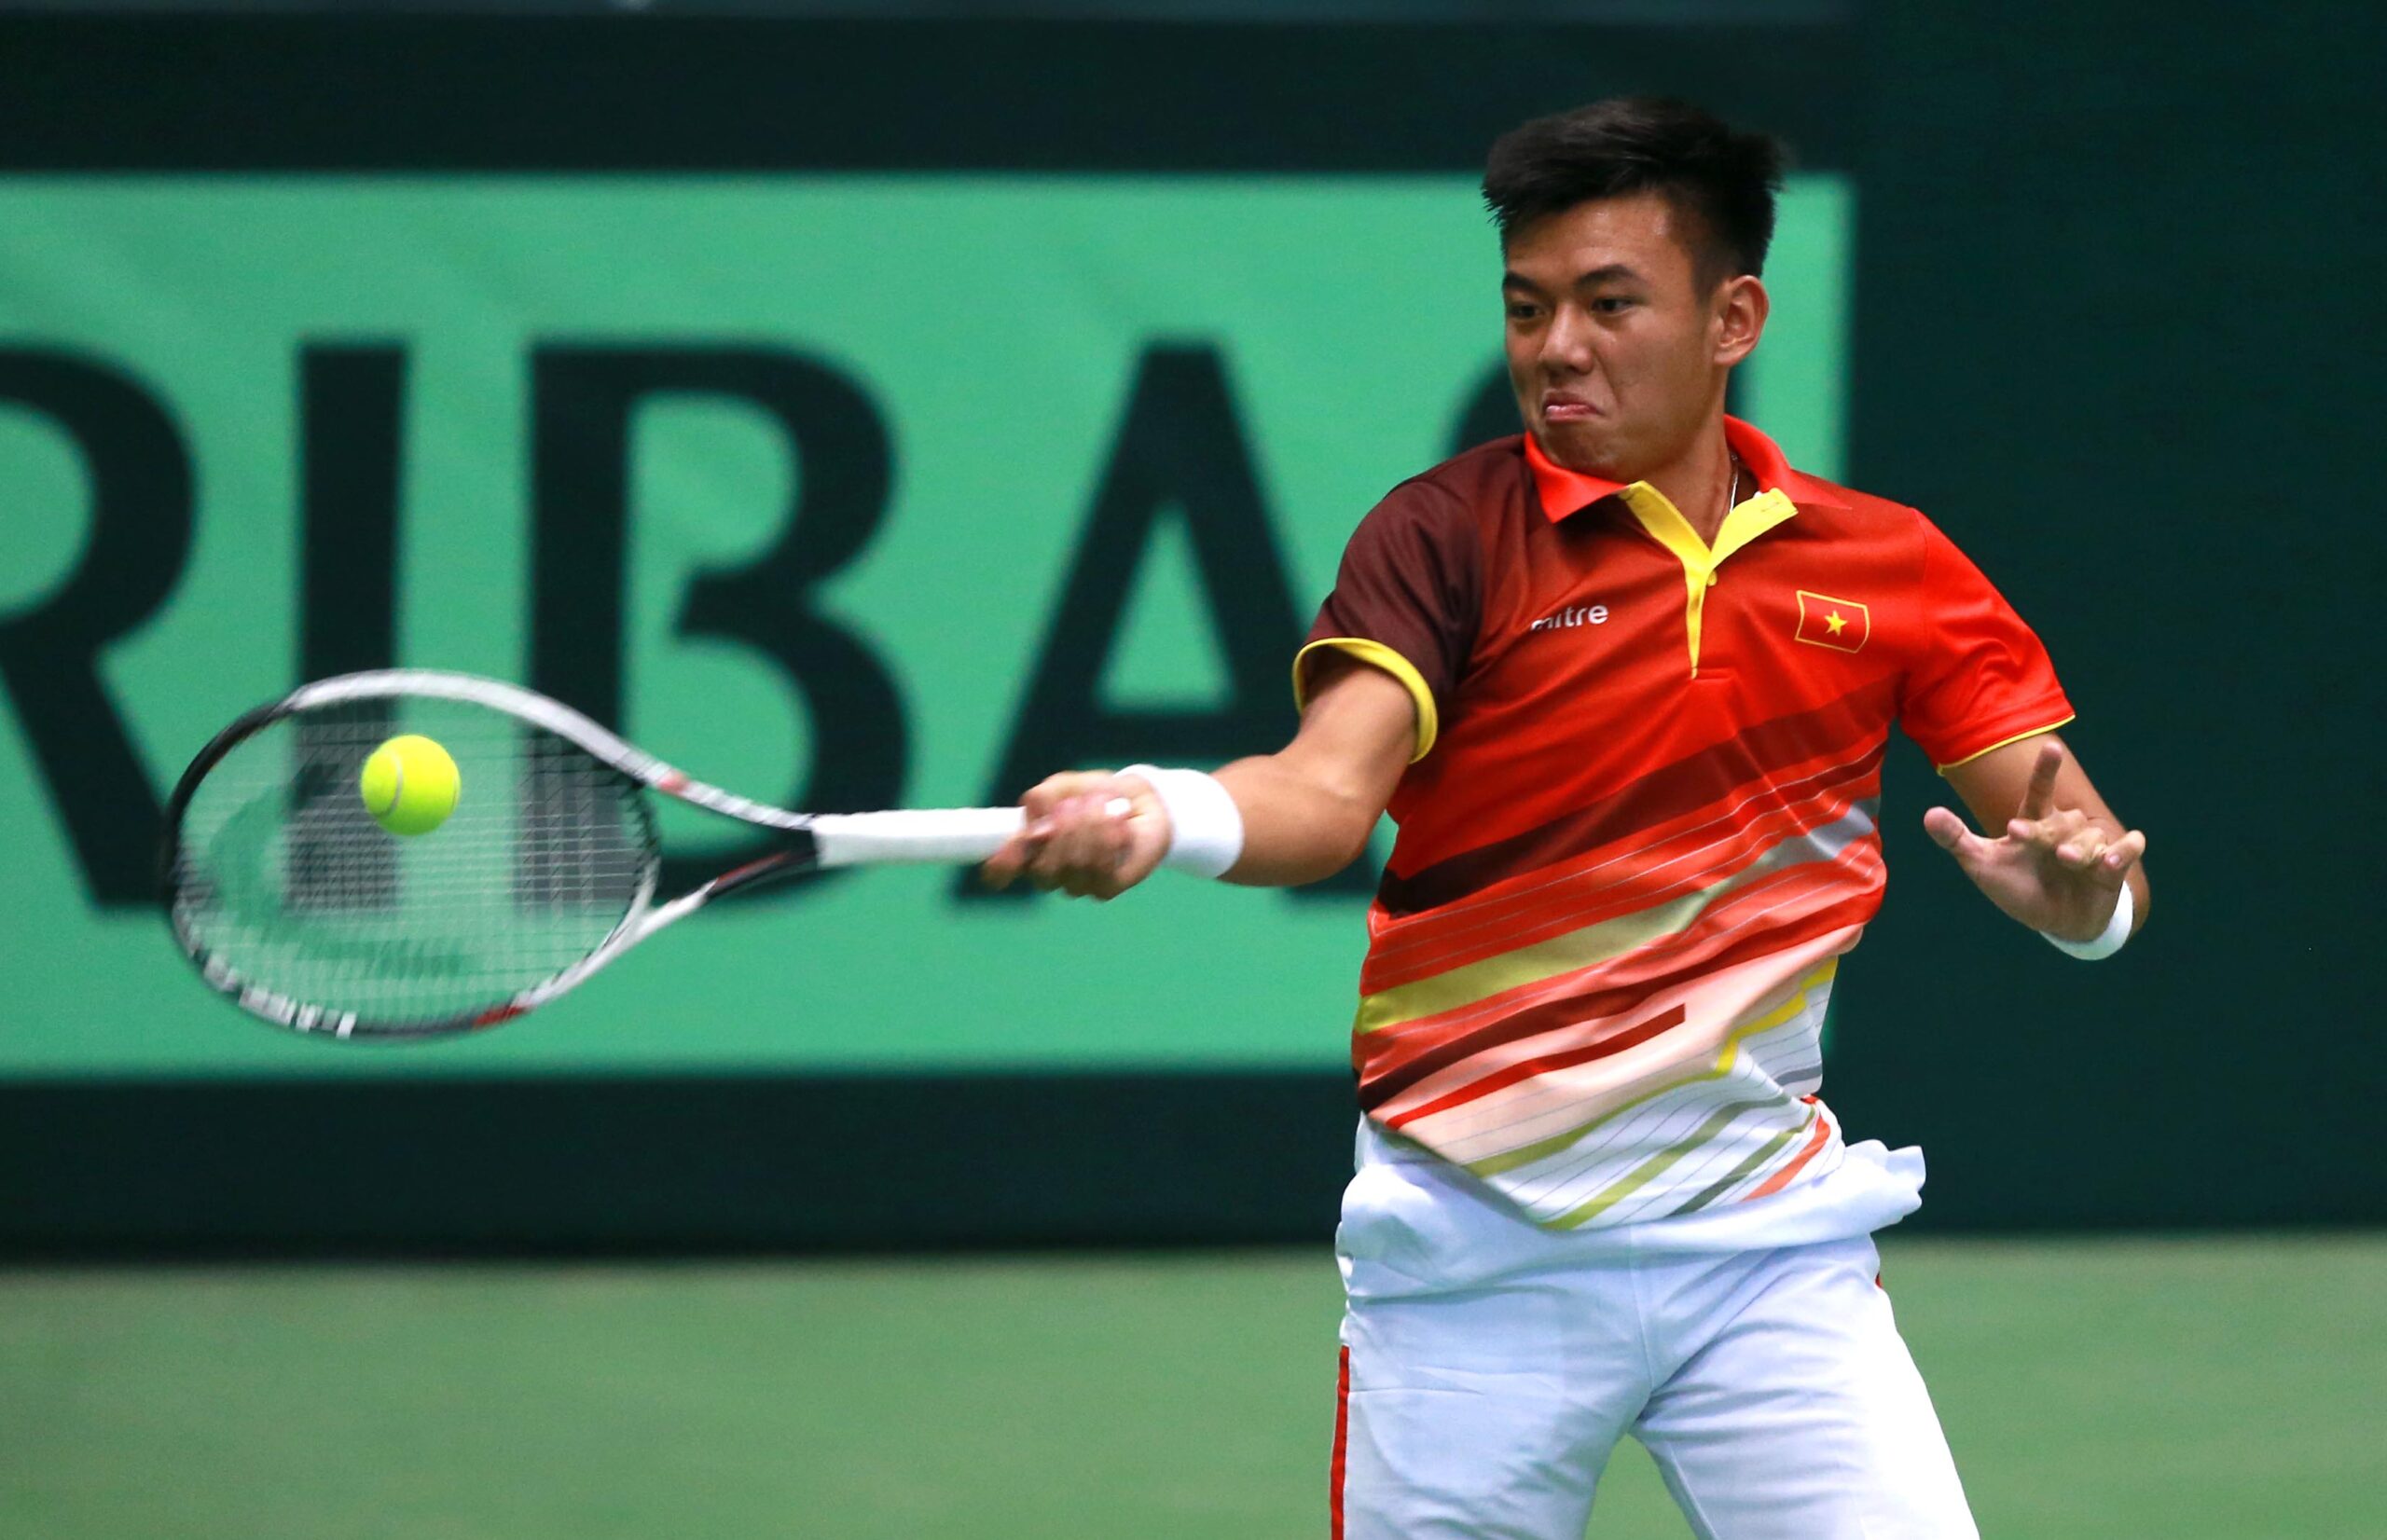 ITF chọn Việt Nam là nơi tổ chức Davis Cup khu vực Châu Á - Thái Bình Dương